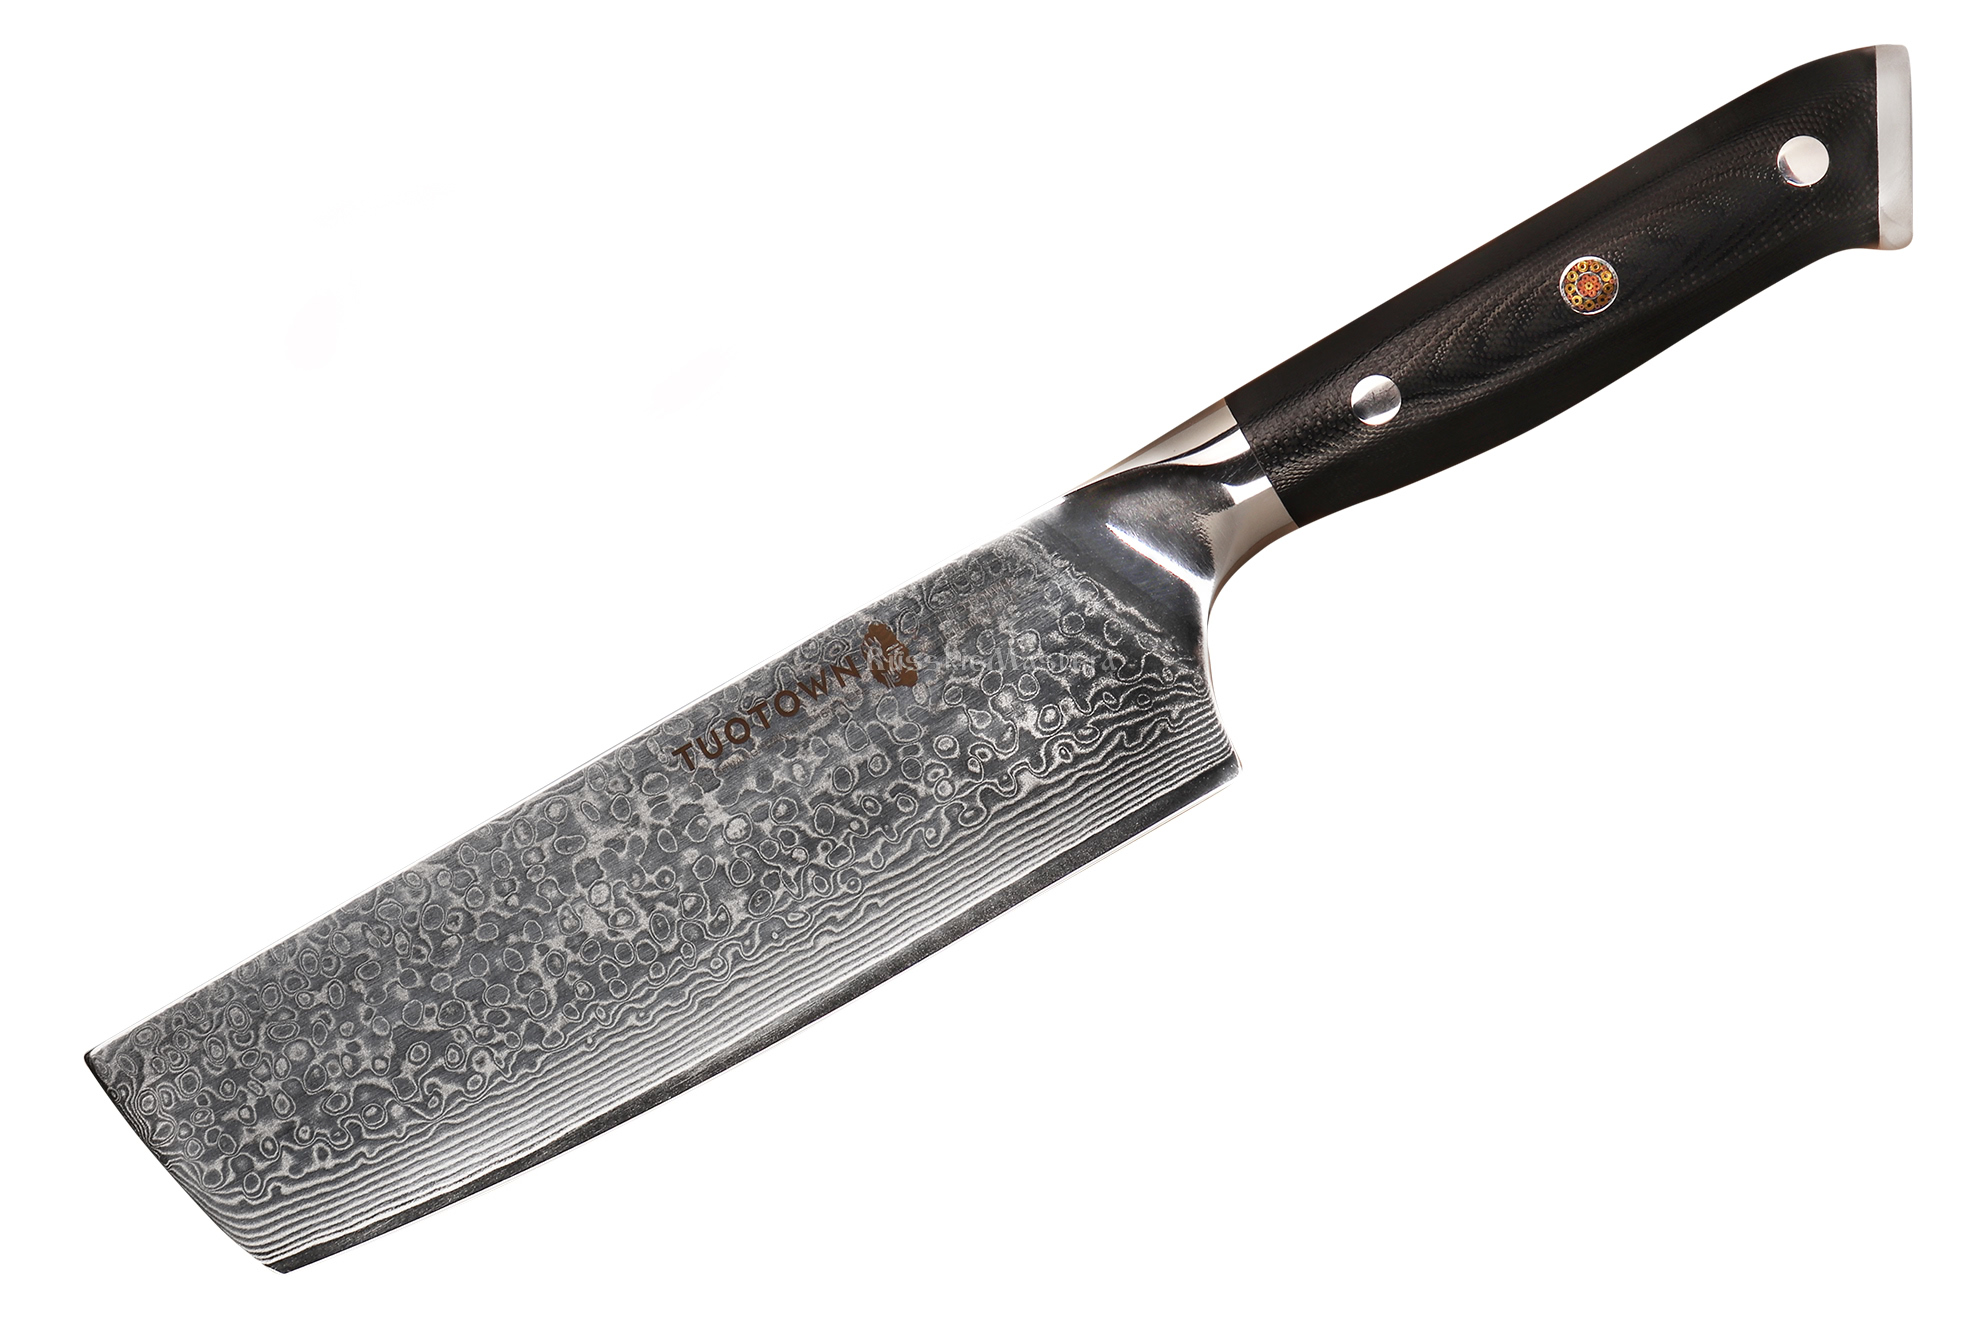 Японский поварской шеф-нож Накири TUOTOWN VE160 TX-D11, VG10 дамаск, рукоять G10, 16 см.